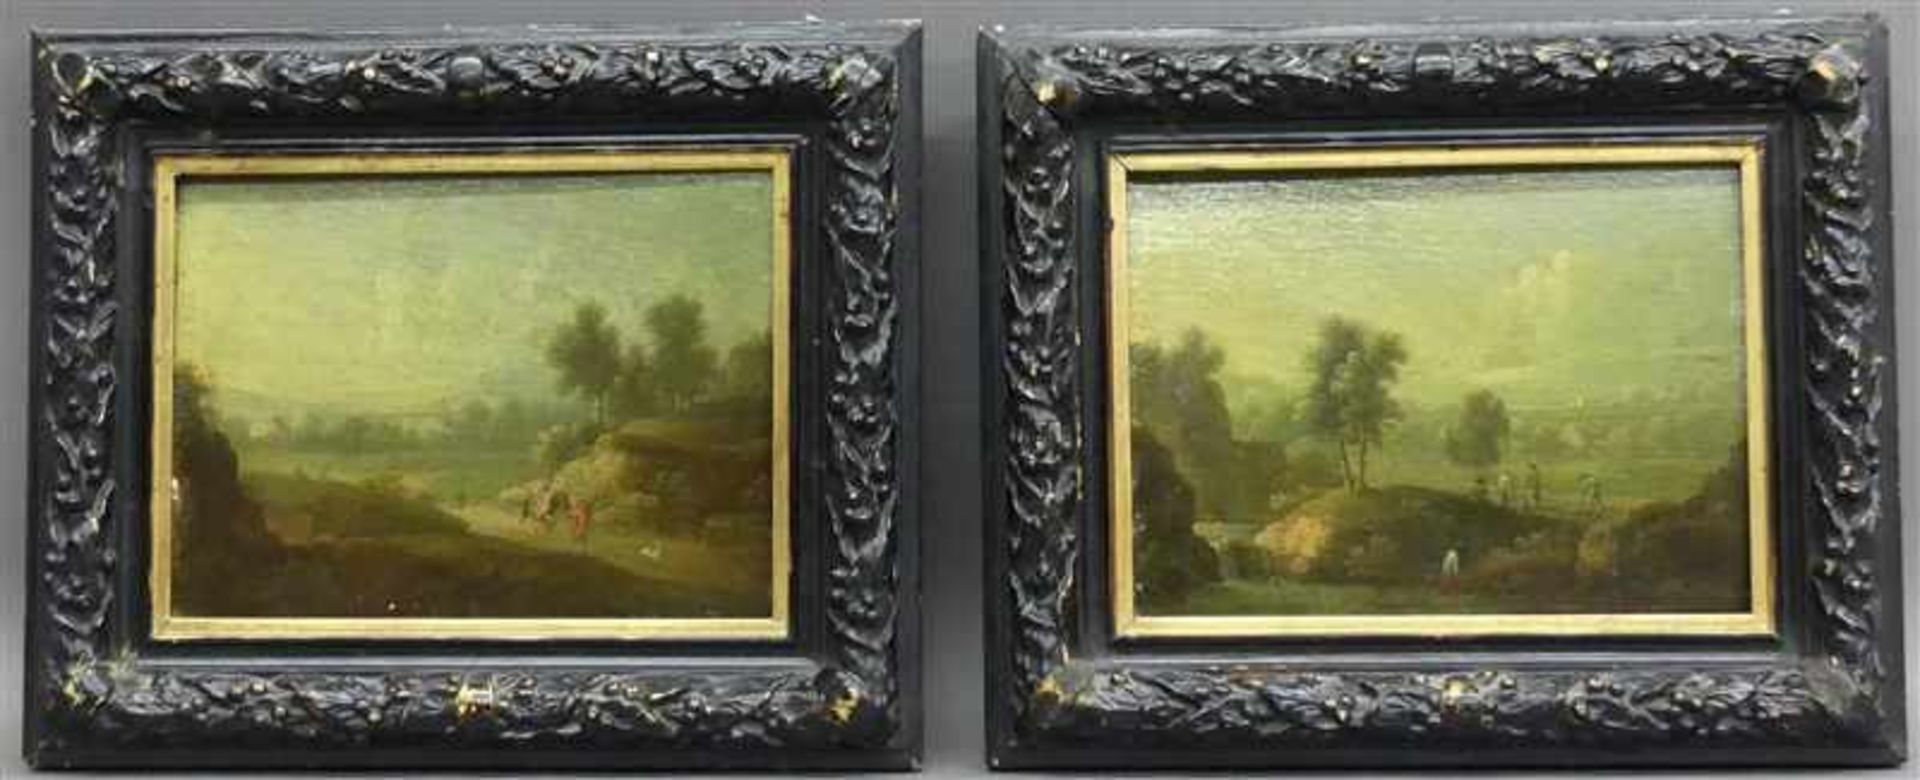 Bemmel, von, zugeschrieben Paar Gemälde, 17./18. Jh., Öl auf Holz, "Weite Landschaften mit Bäumen